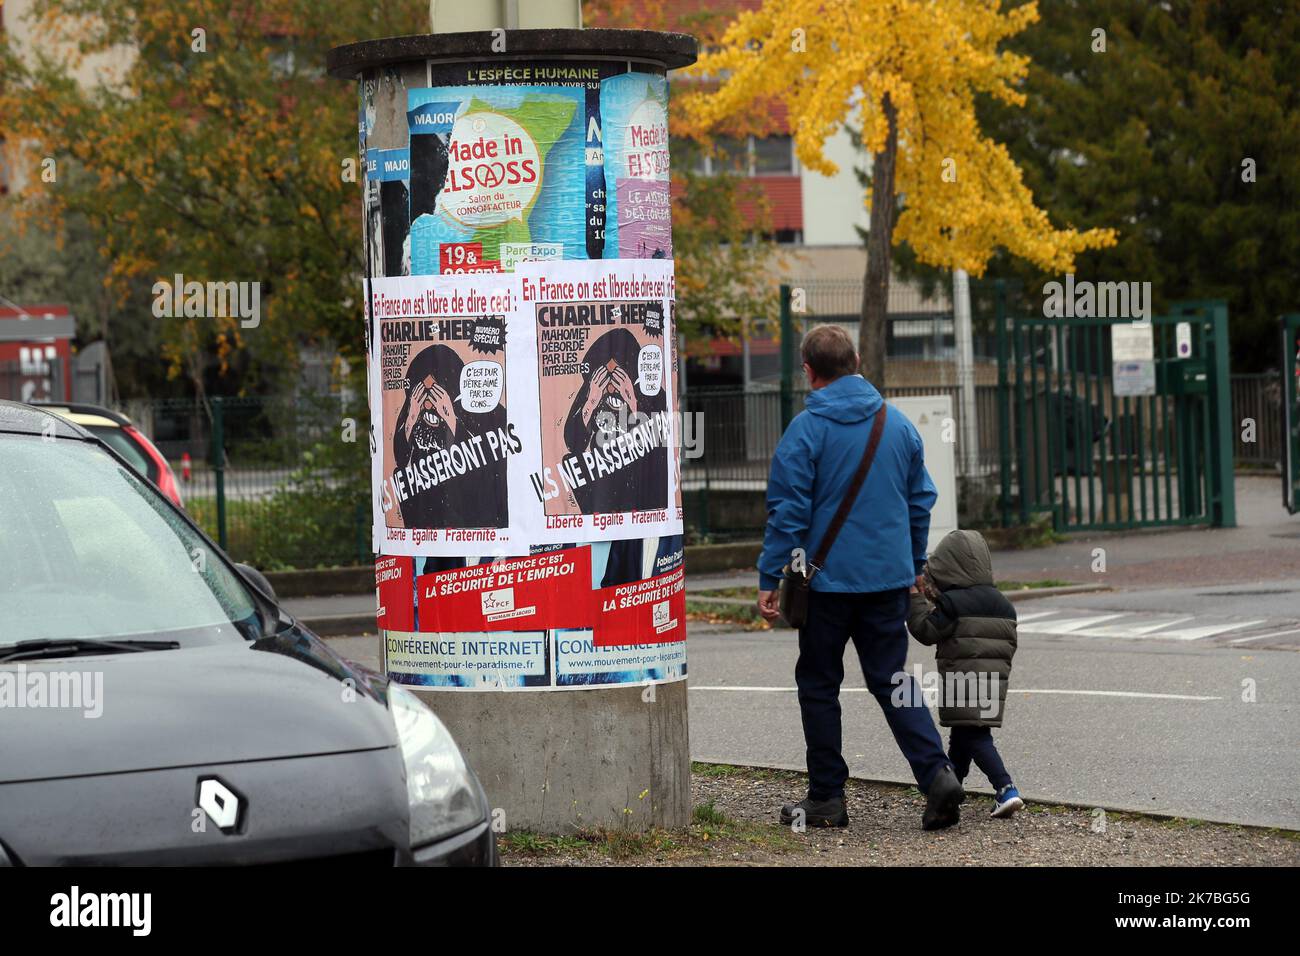 ©PHOTOPQR/L'ALSACE/Thierry GACHON ; Colmar ; 23/10/2020 ; Une semaine après l'assassinat de Samuel Paty, des affiches reproduisant la une du journal Charlie Hebdo avec la caricature de Mahomet dessinée par Cabu 'C'est dur d'être aimé par les cons' ont été collées dans la nuit du 23 octobre 2020 sur les colonnes Morris de Colmar (Haut-Rhin) avec le message suivant : 'En France on est libre de dire ceci' et 'Ils ne passeront pas', suivi de 'Liberté Egalité Fraternité...' (Rue du Logelbach à Colmar). A week after the assassination of Samuel Paty, posters reproducing the front page of the Charlie  Stock Photo